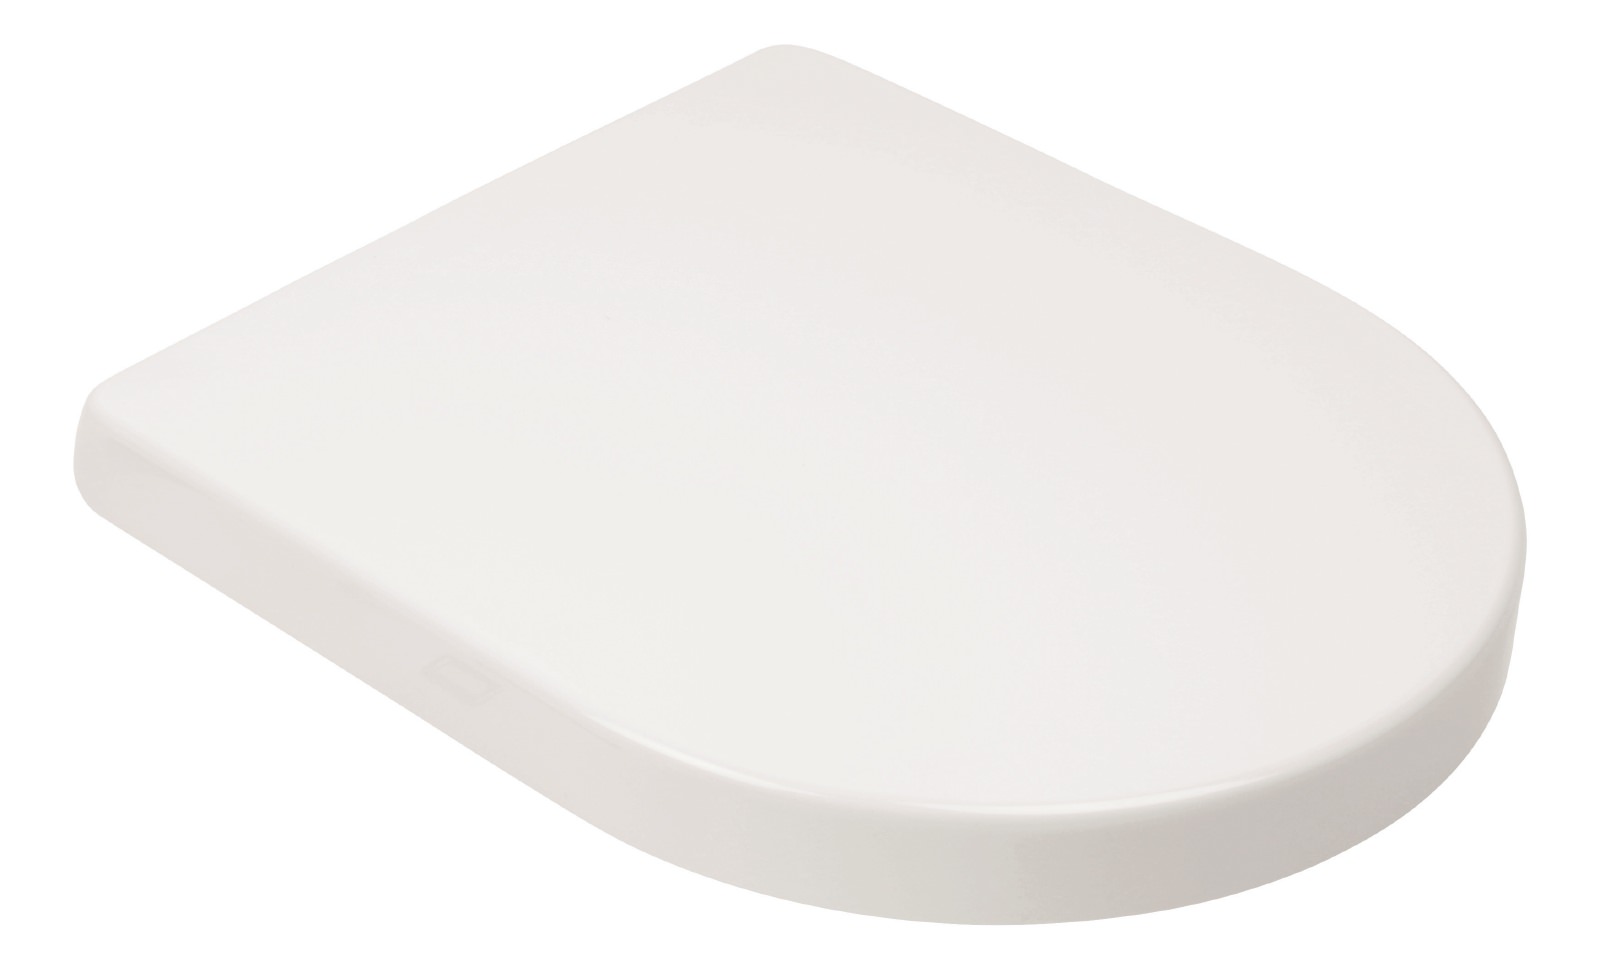 WC-Sitz mit Absenkautomatik Honest in Weiß mit D-Form, überlappend und abnehmbar, Duroplast